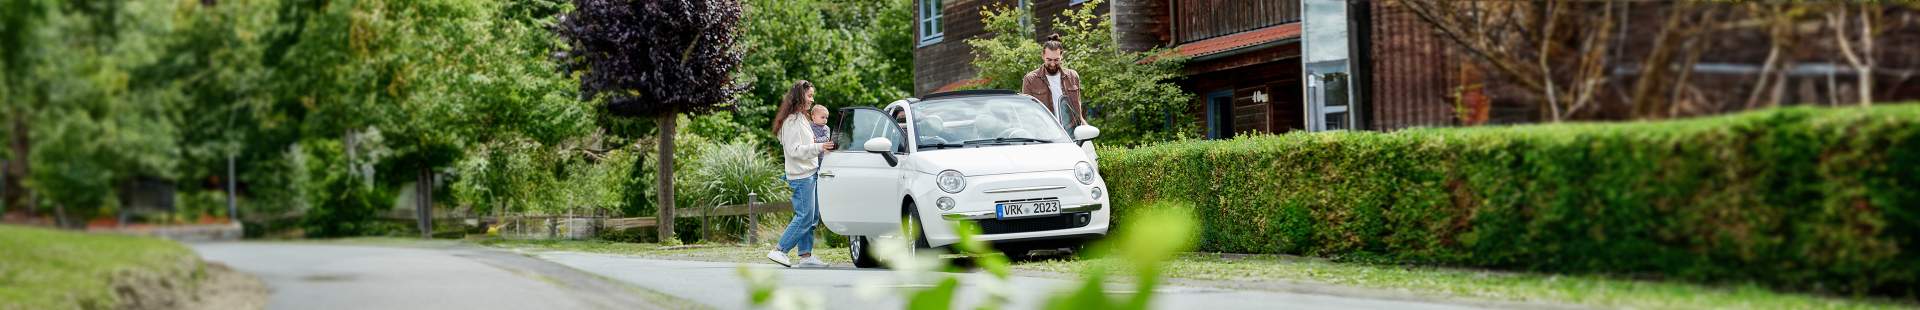 VRK Kfz-Versicherung –  Eine junge Familie steigt in ihr Auto ein.